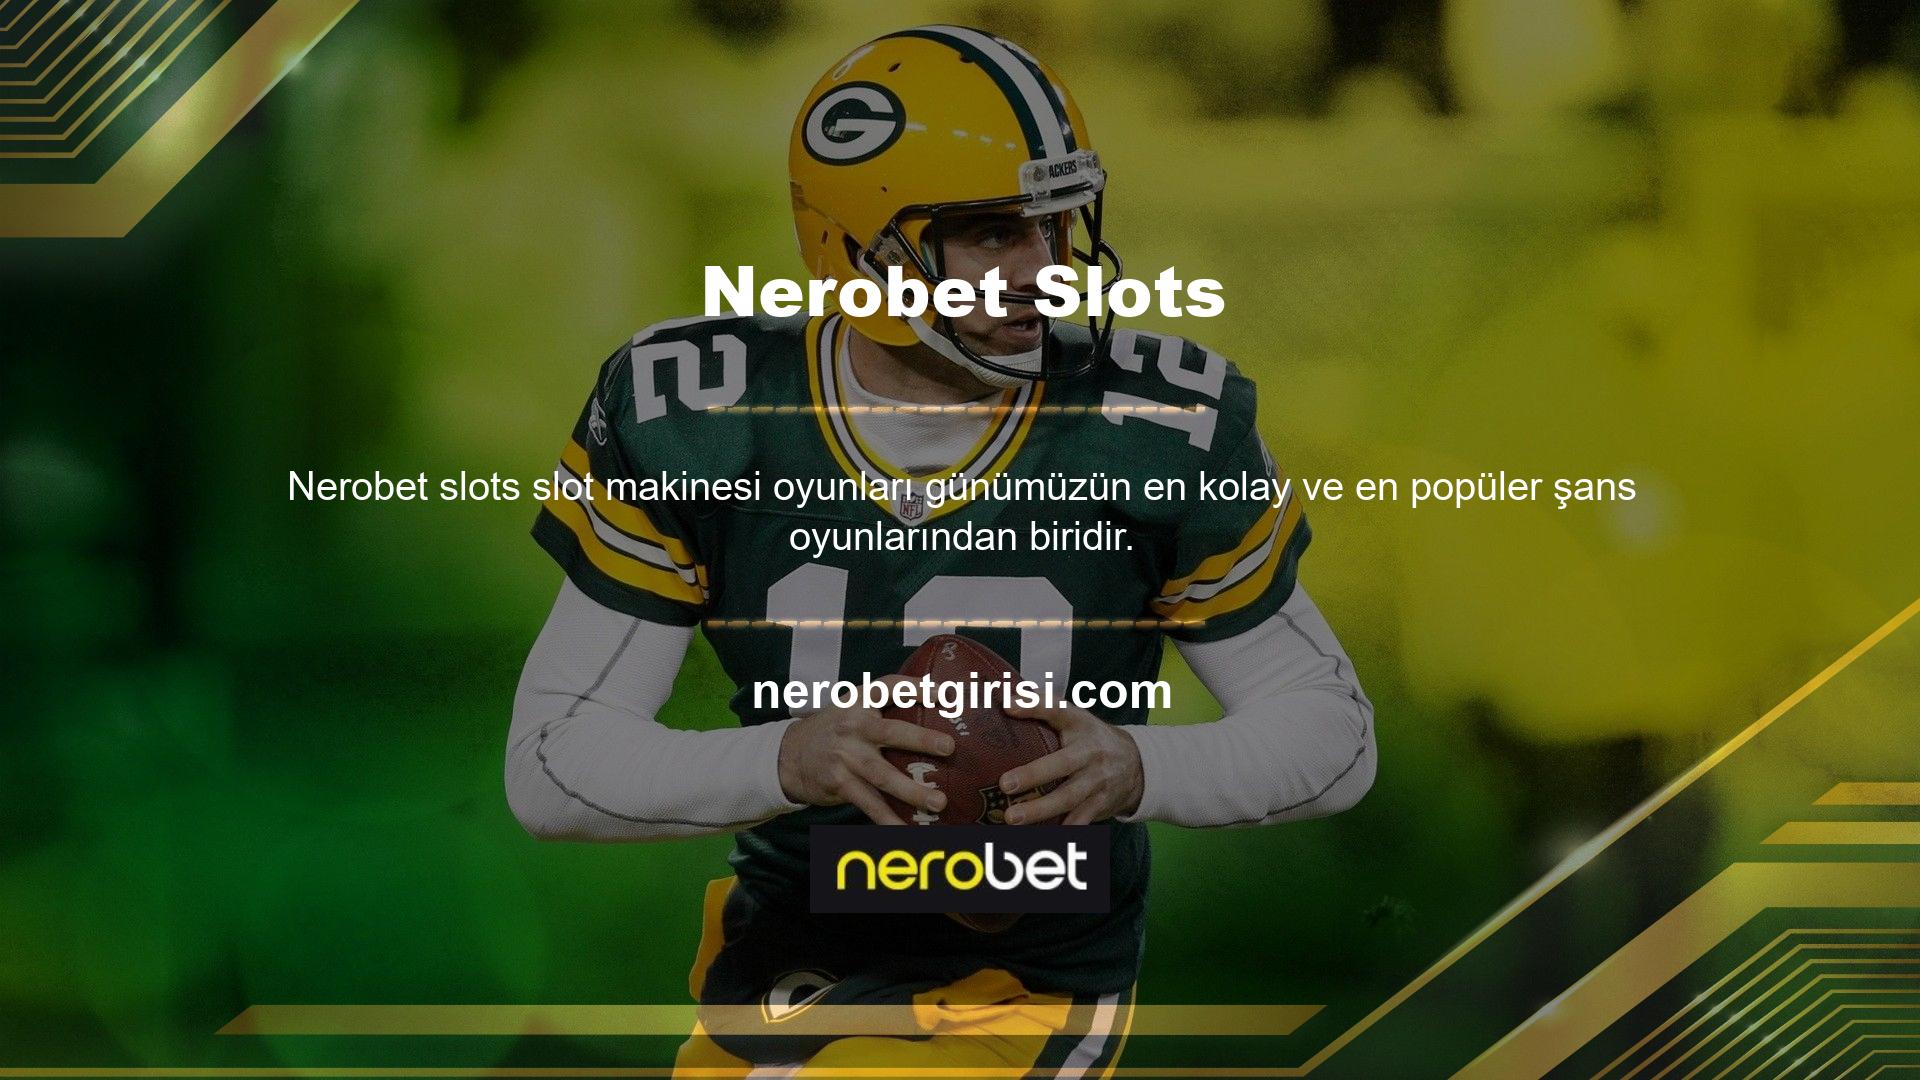 Türkiye'deki Nerobet slot siteleri genellikle premium hizmetler ve birçok popüler slot oyunu sunmaktadır